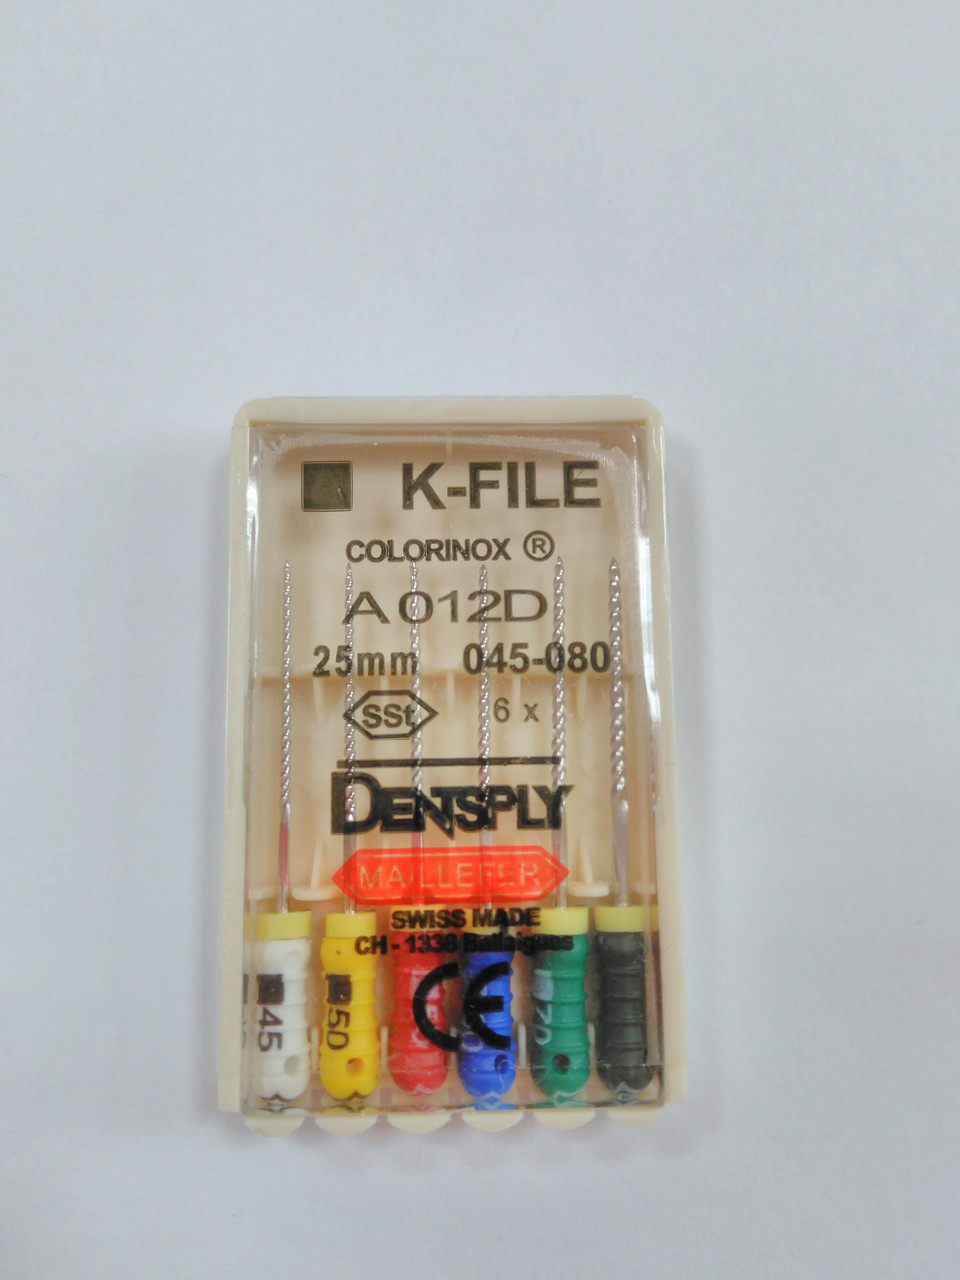 К-файли (K-file) 6 шт Maillefer 45-80 (25 мм)